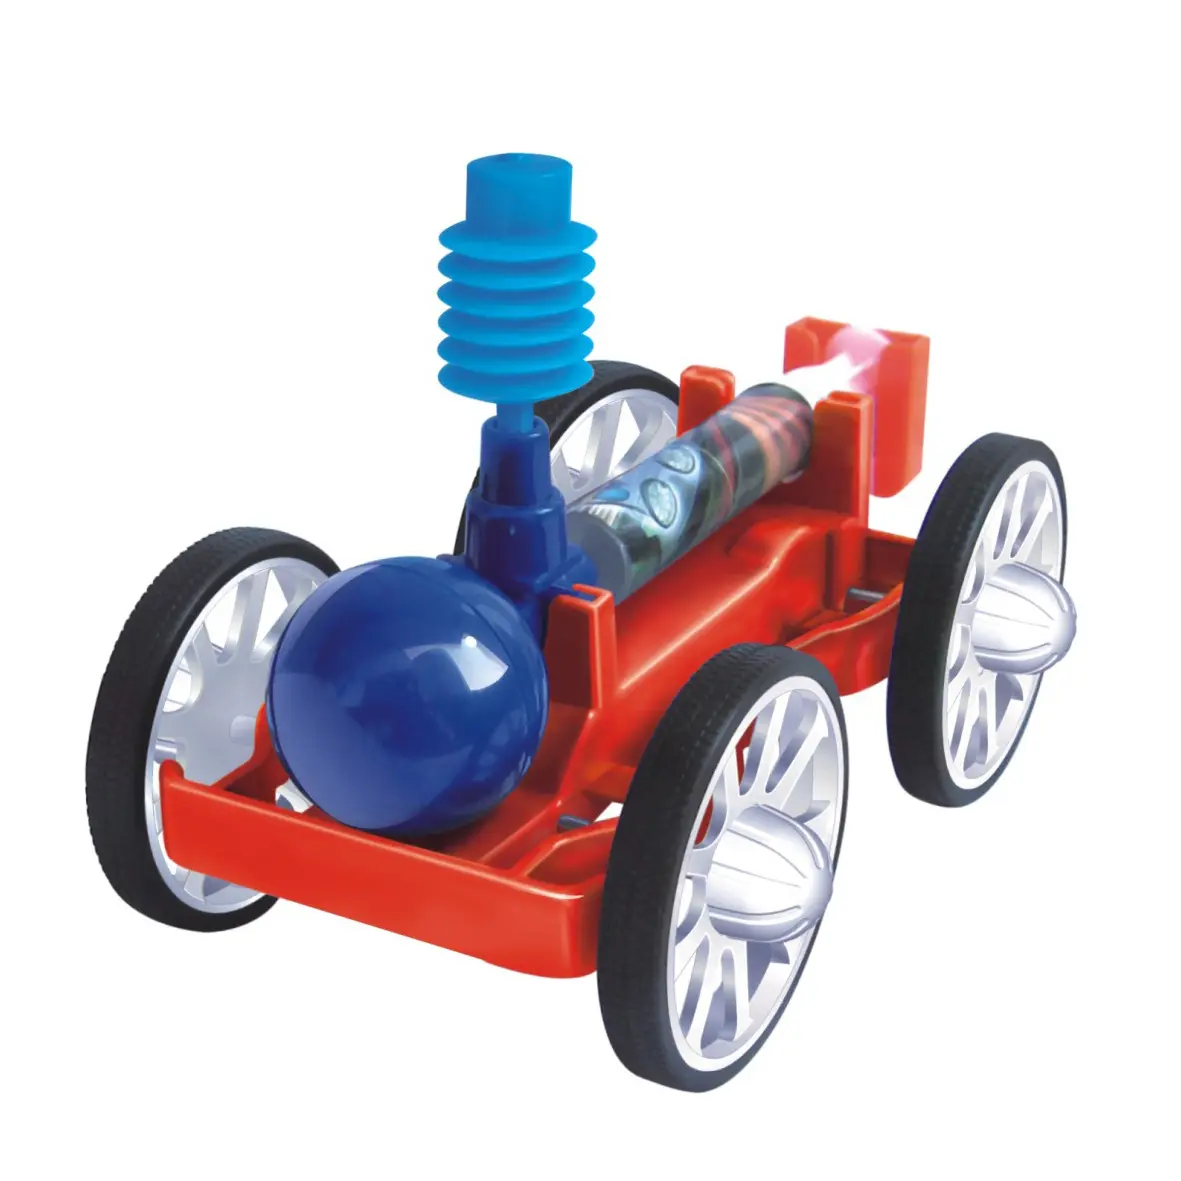 Gelsonlab HSTM-049 DIY विज्ञान खिलौना हवा संचालित कार प्रयोग